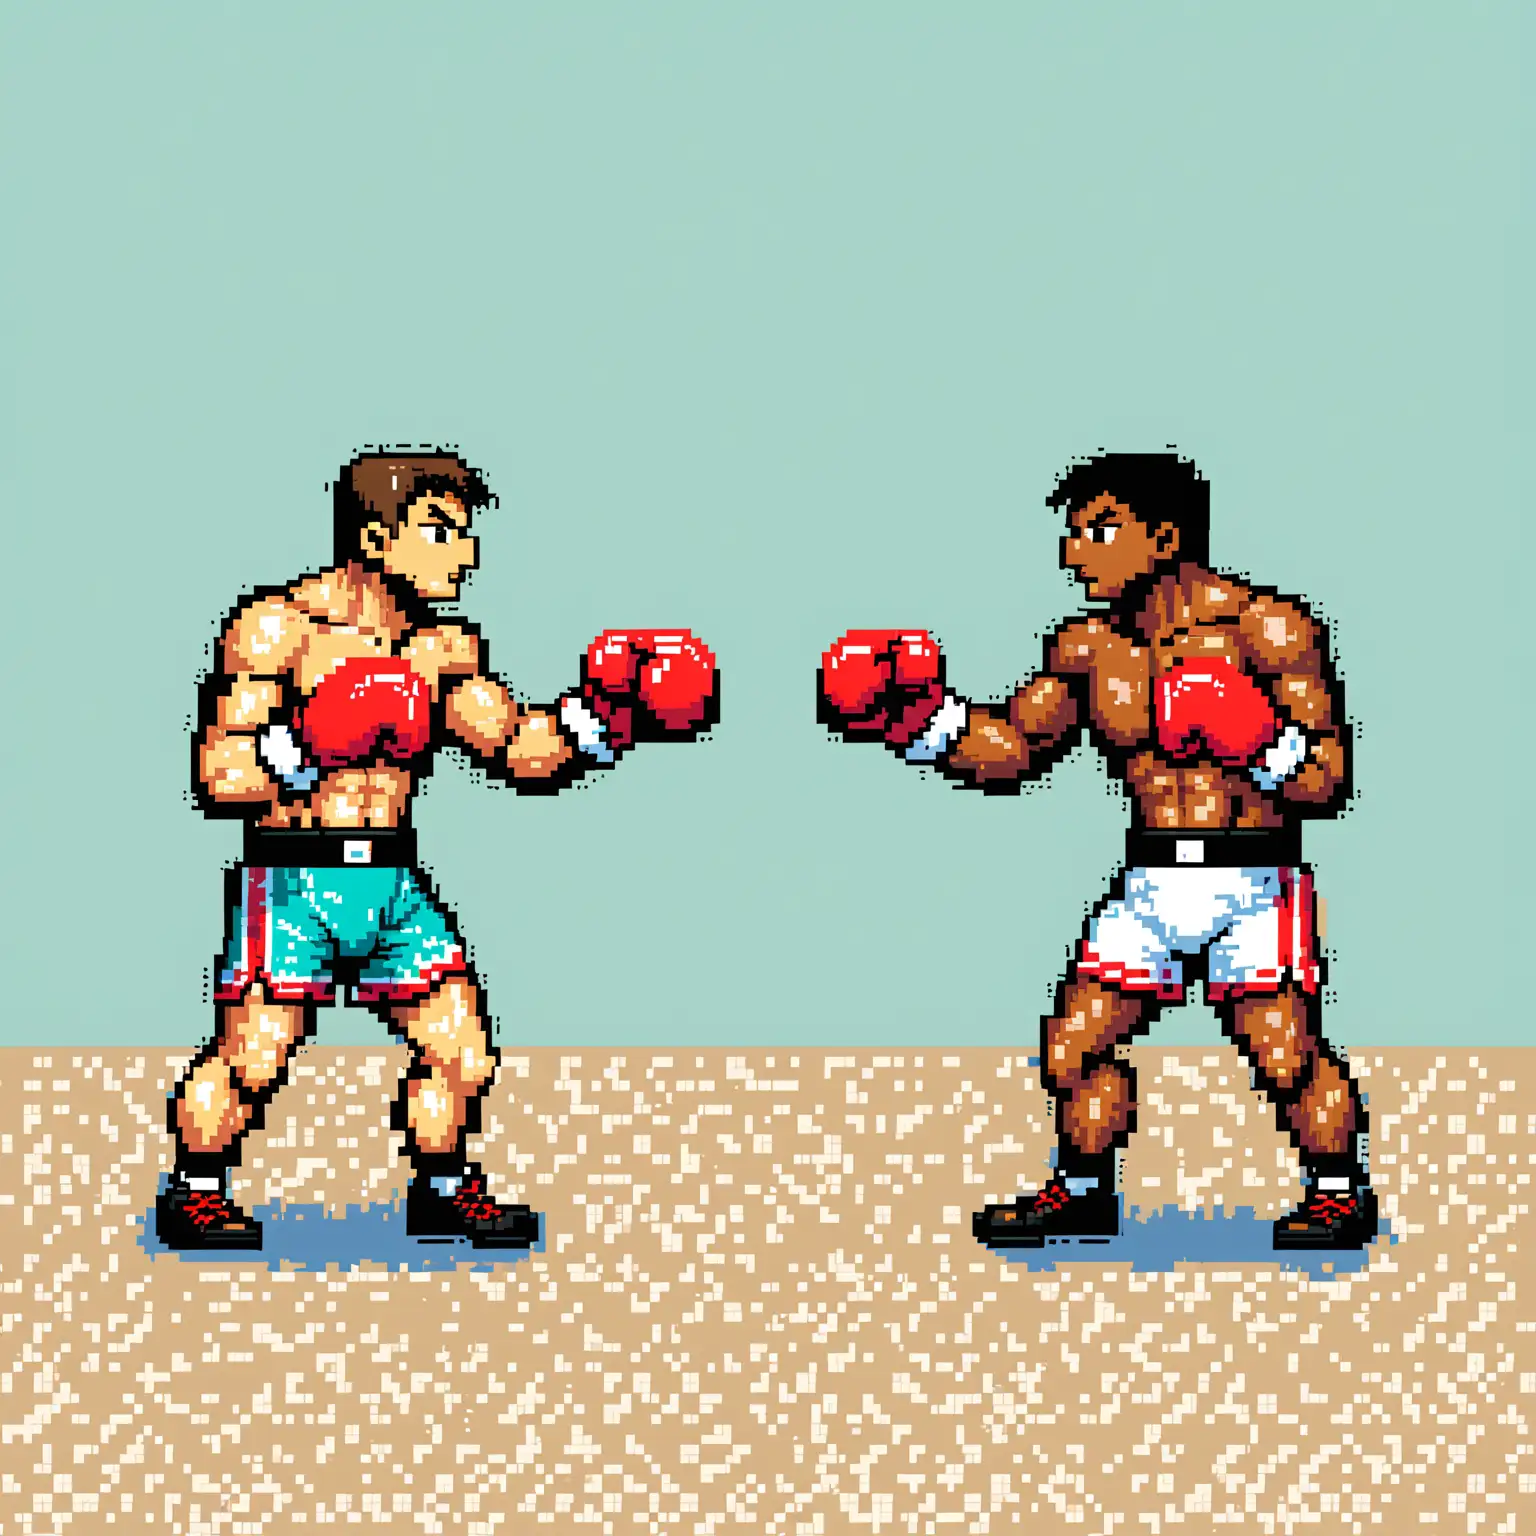 dans un style pixel art de très bonne qualité :
deux boxeur qui s'affronte.
